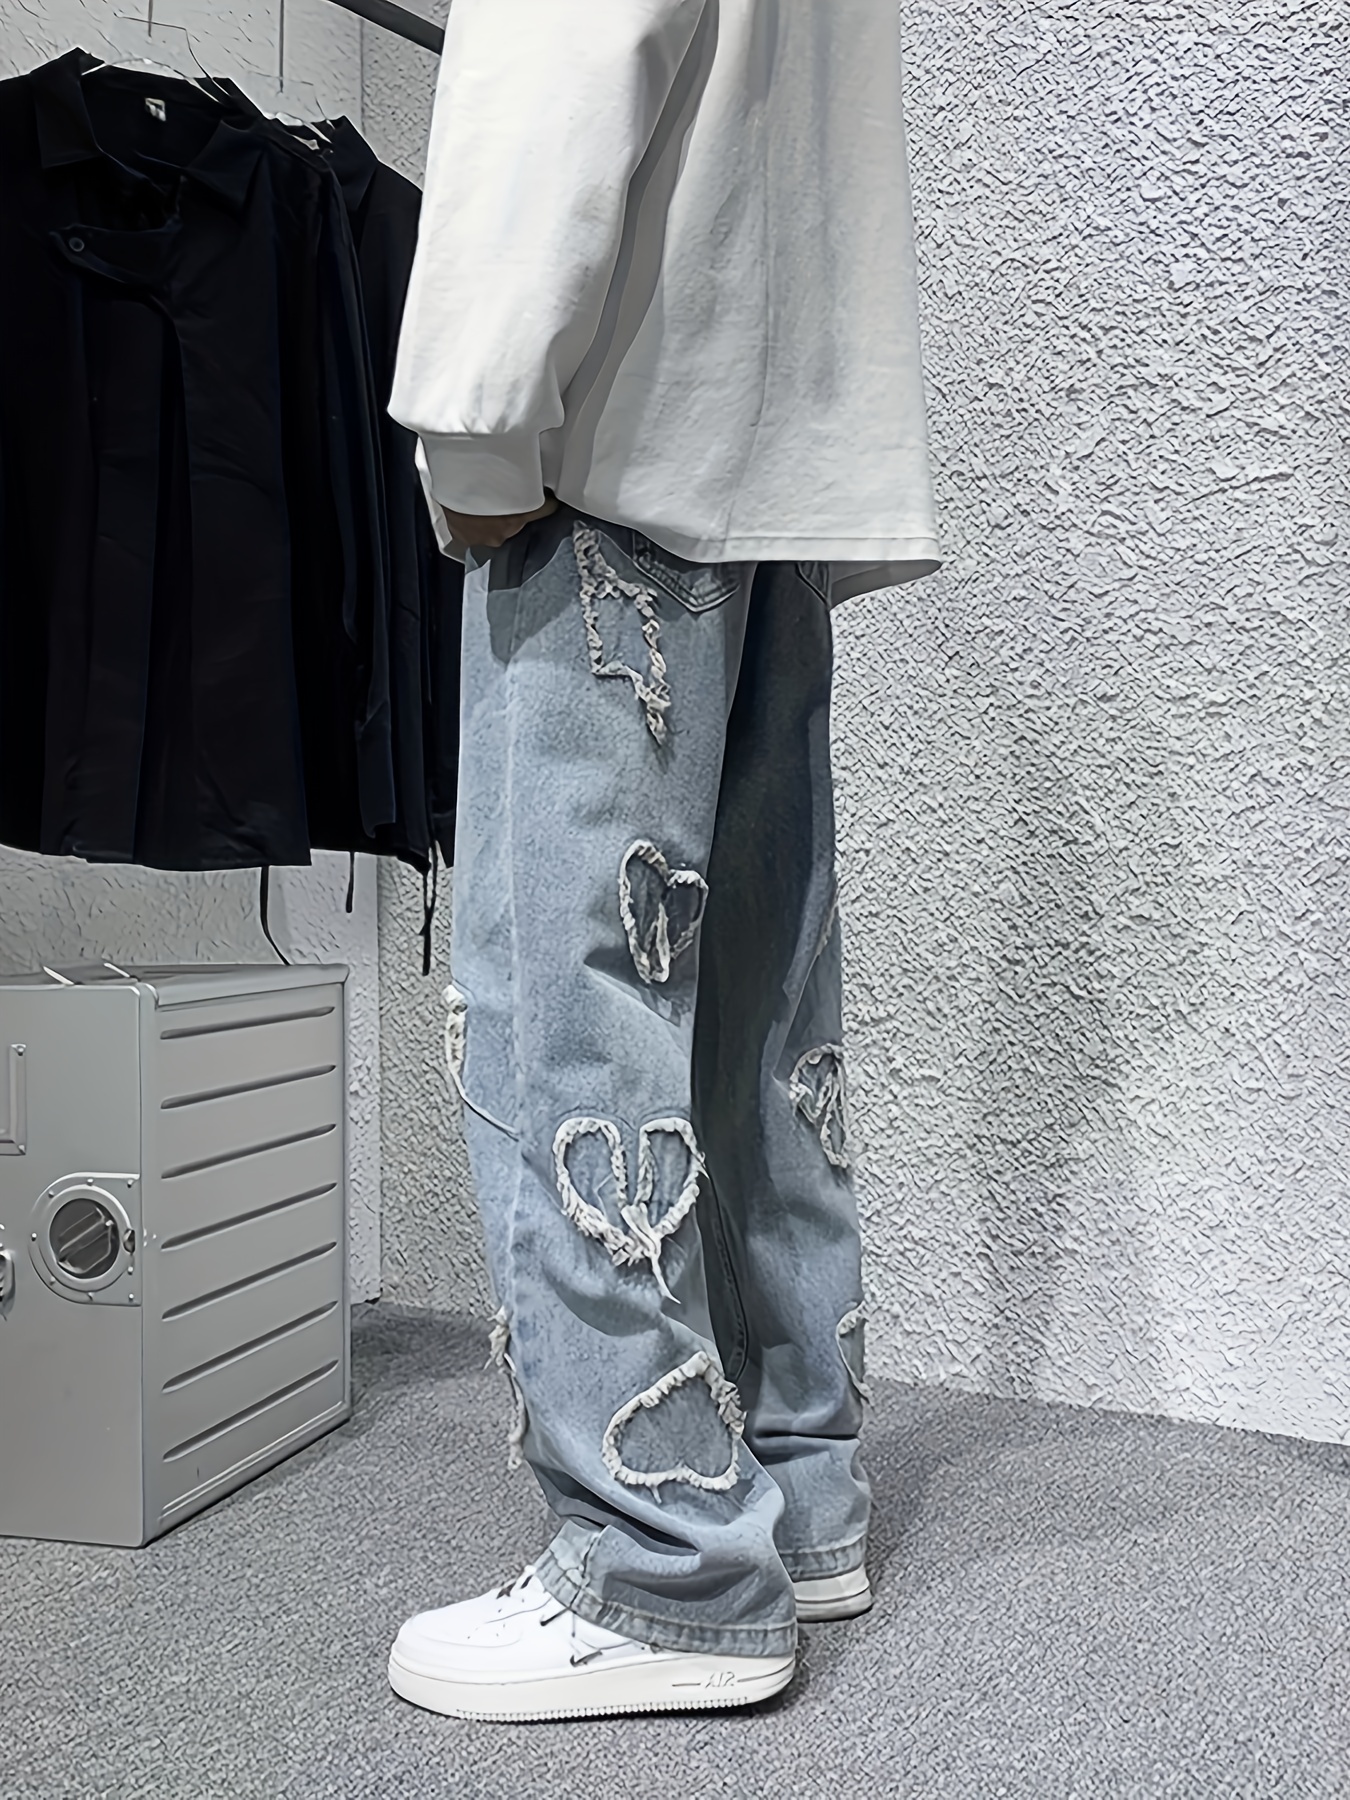 Pantalones retro de estilo ancho a la moda para mujer - Gray / XS